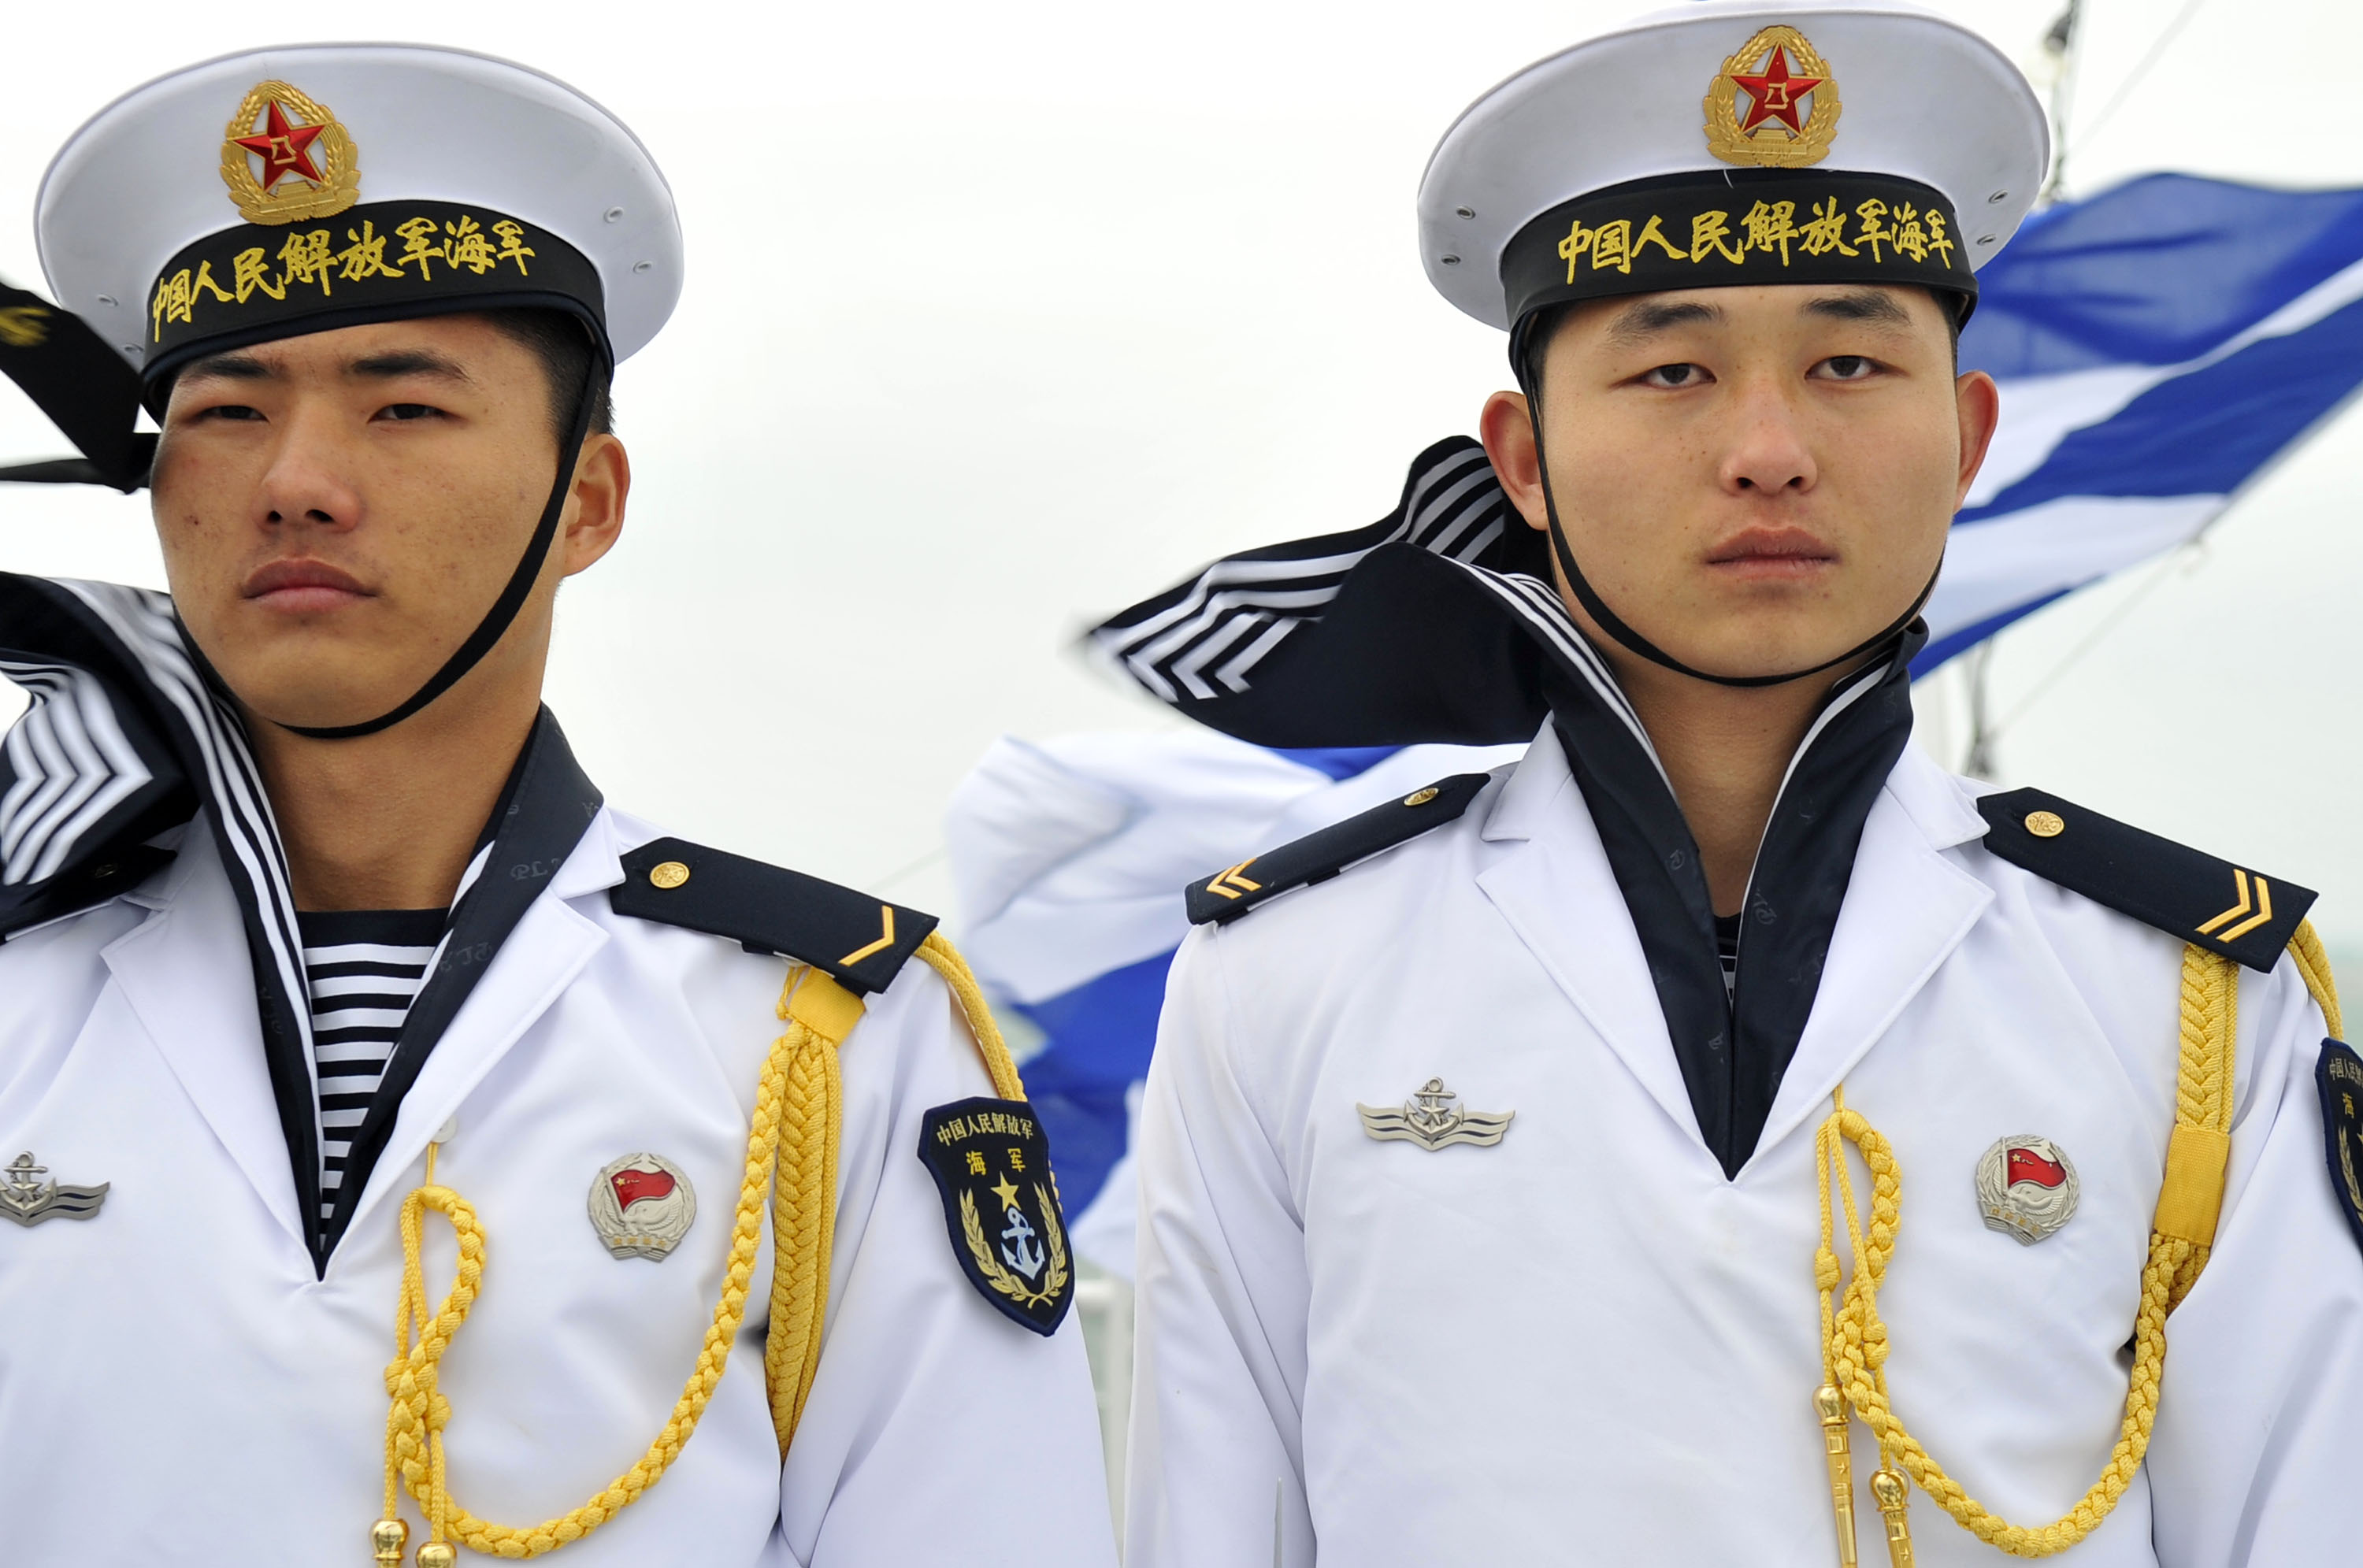 sailors images